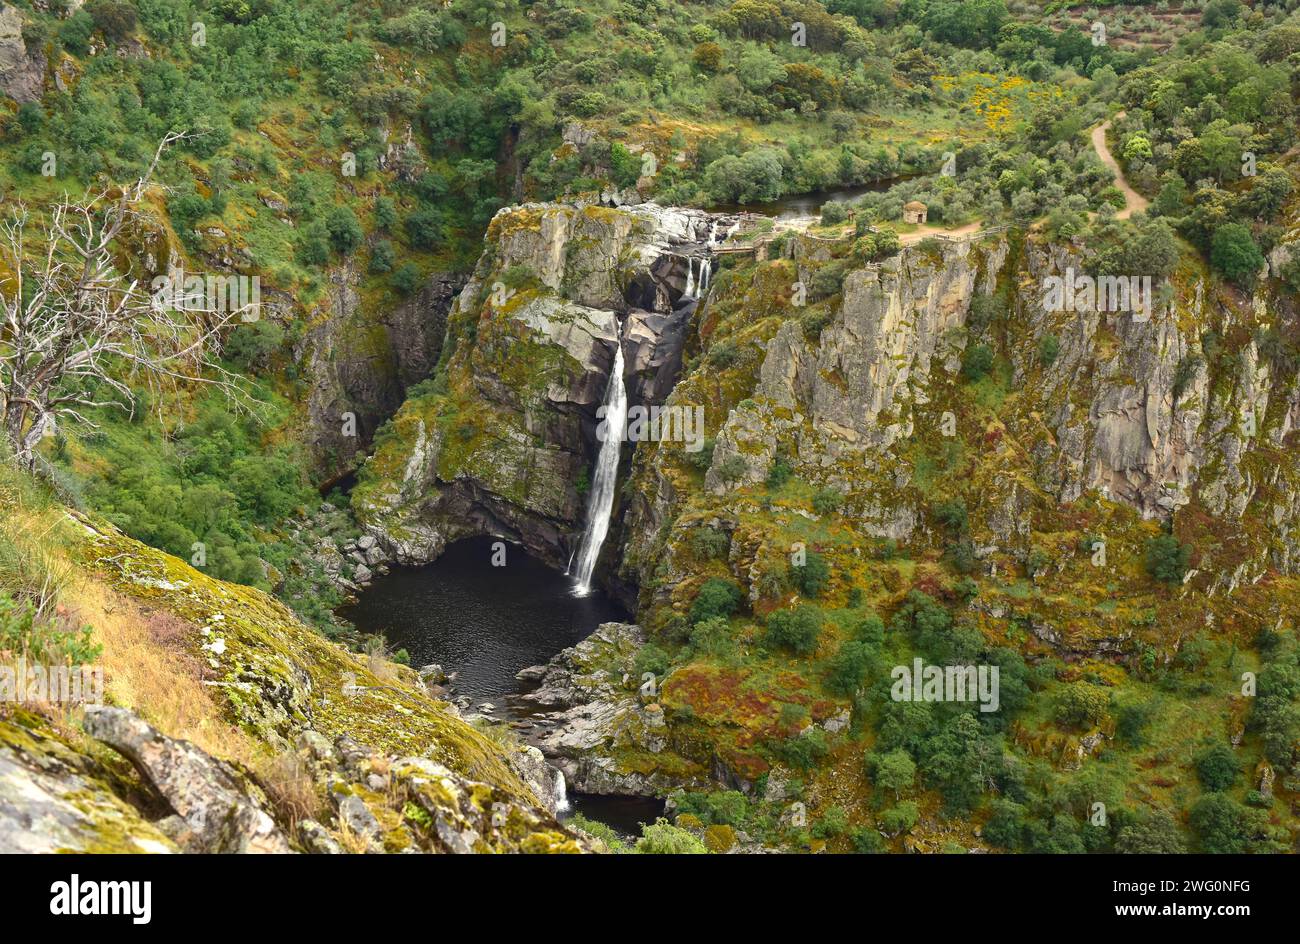 Pereña de la Ribera, Pozo de los Humos waterfall. Salamanca province, Castilla y Leon, Spain. Stock Photo